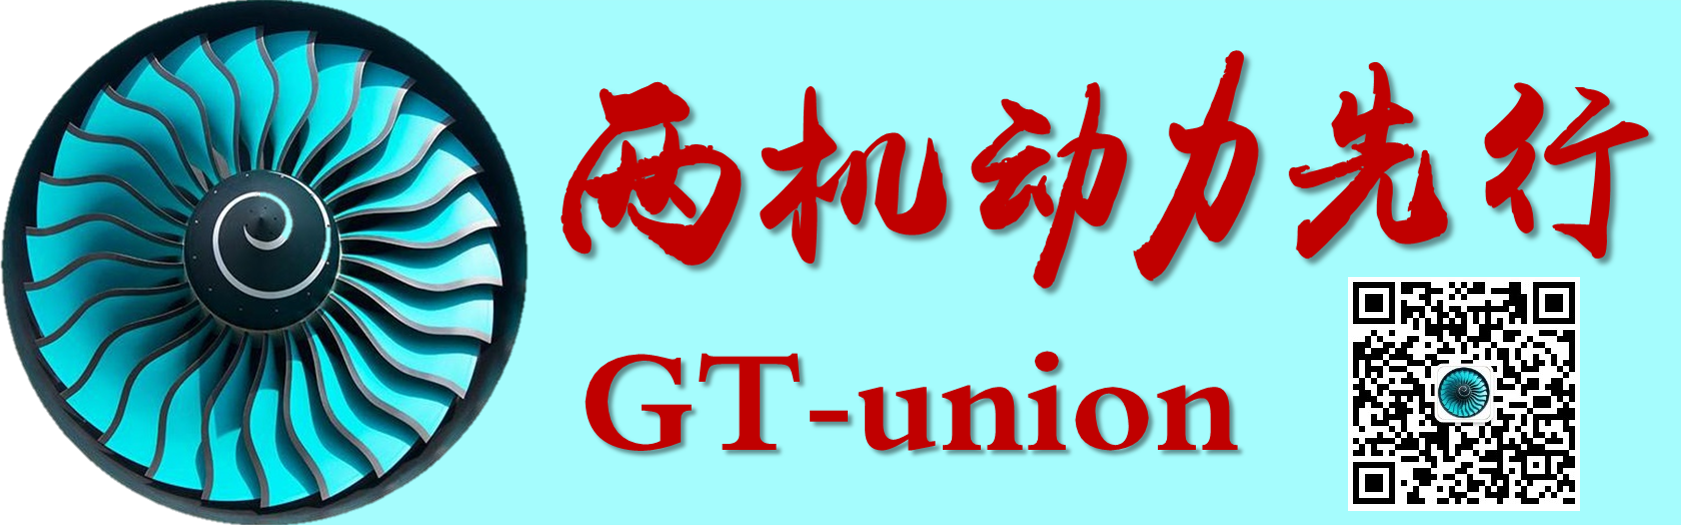 GT-union